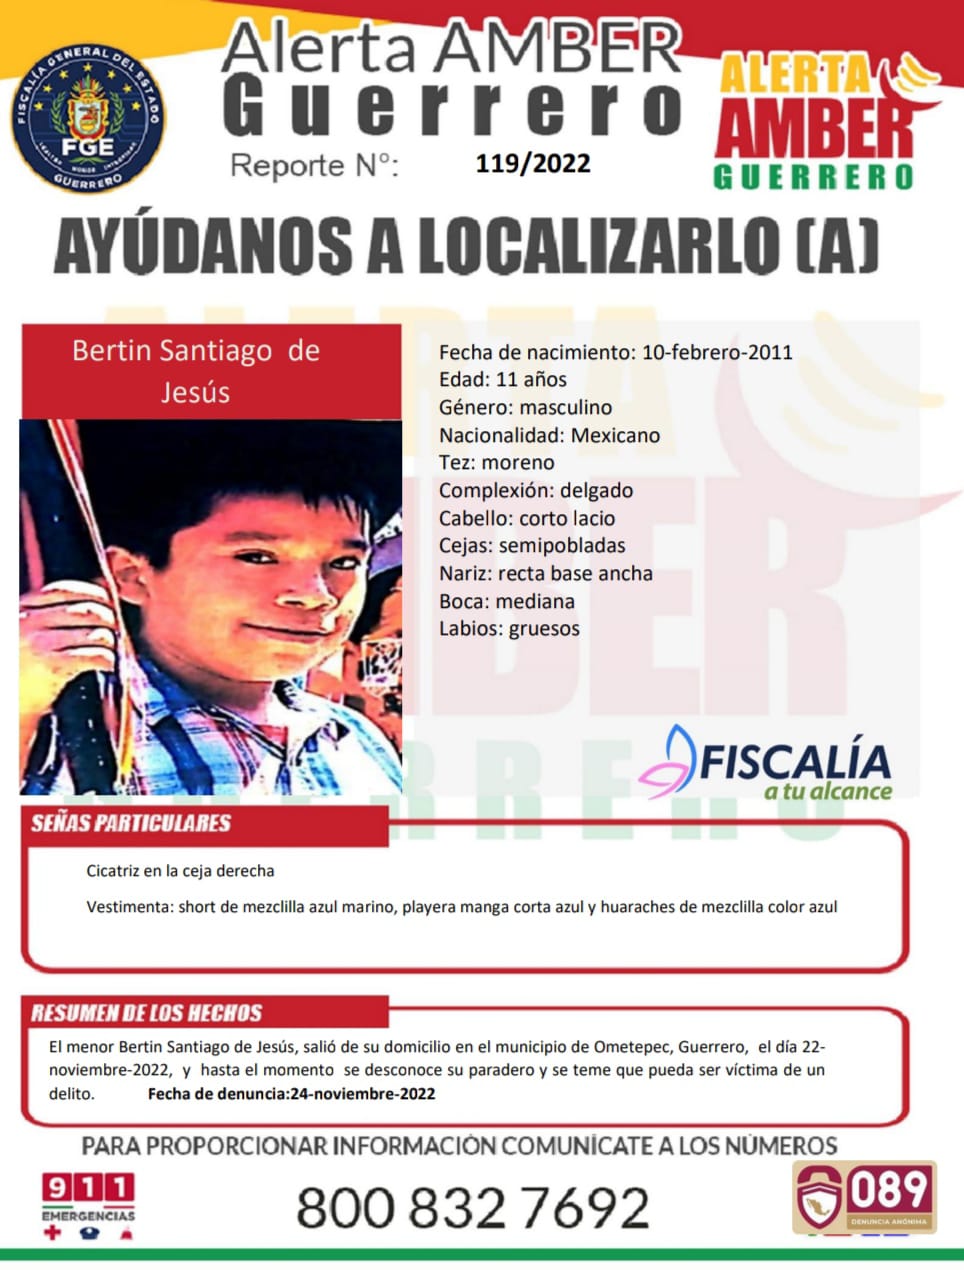 Fiscalía General Del Estado Solicita Su Colaboración Para Localizar A Bertín Santiago De Jesús.